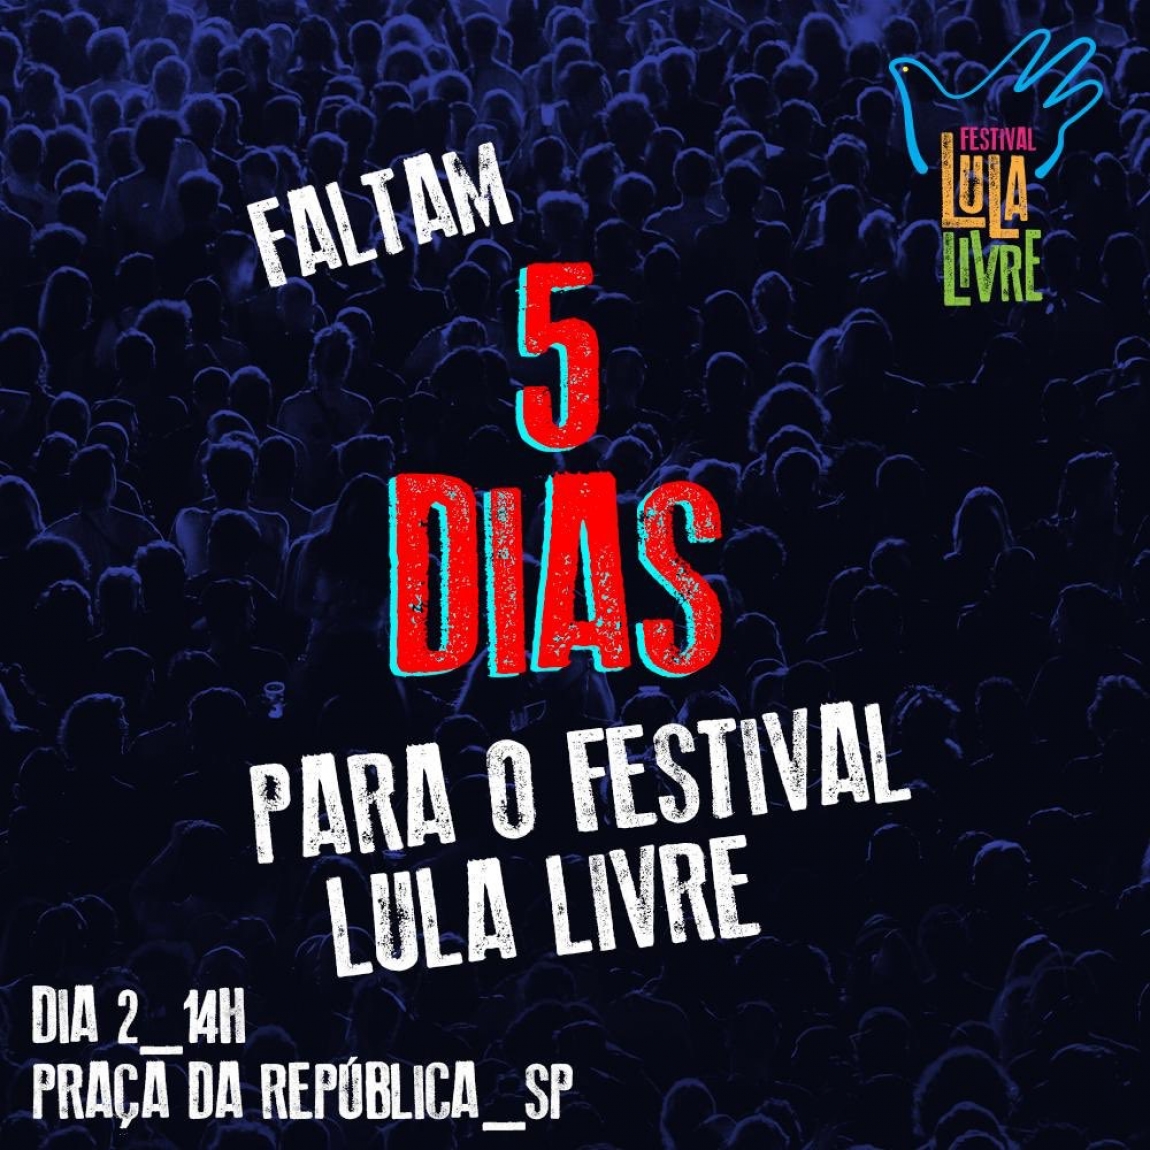 Imagem de São Paulo: Esquenta para o Festival Lula Livre agita Teatro Oficina nesta terça-feira 